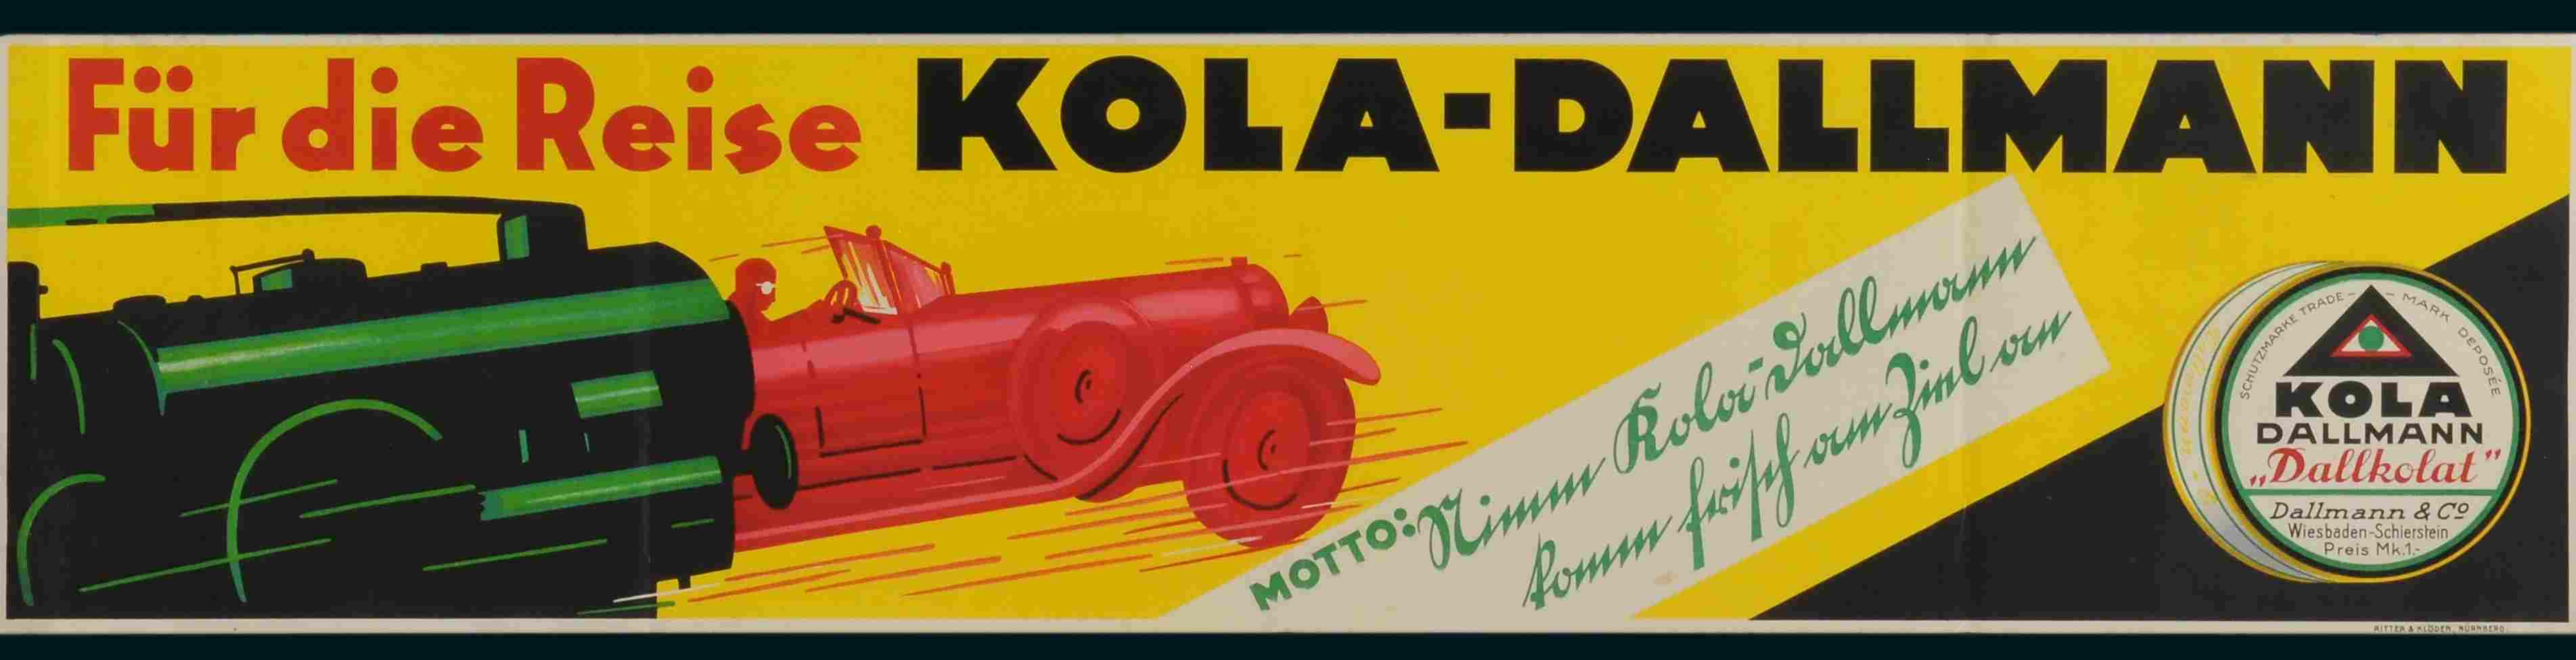 Kola-Dallmann Plakat 